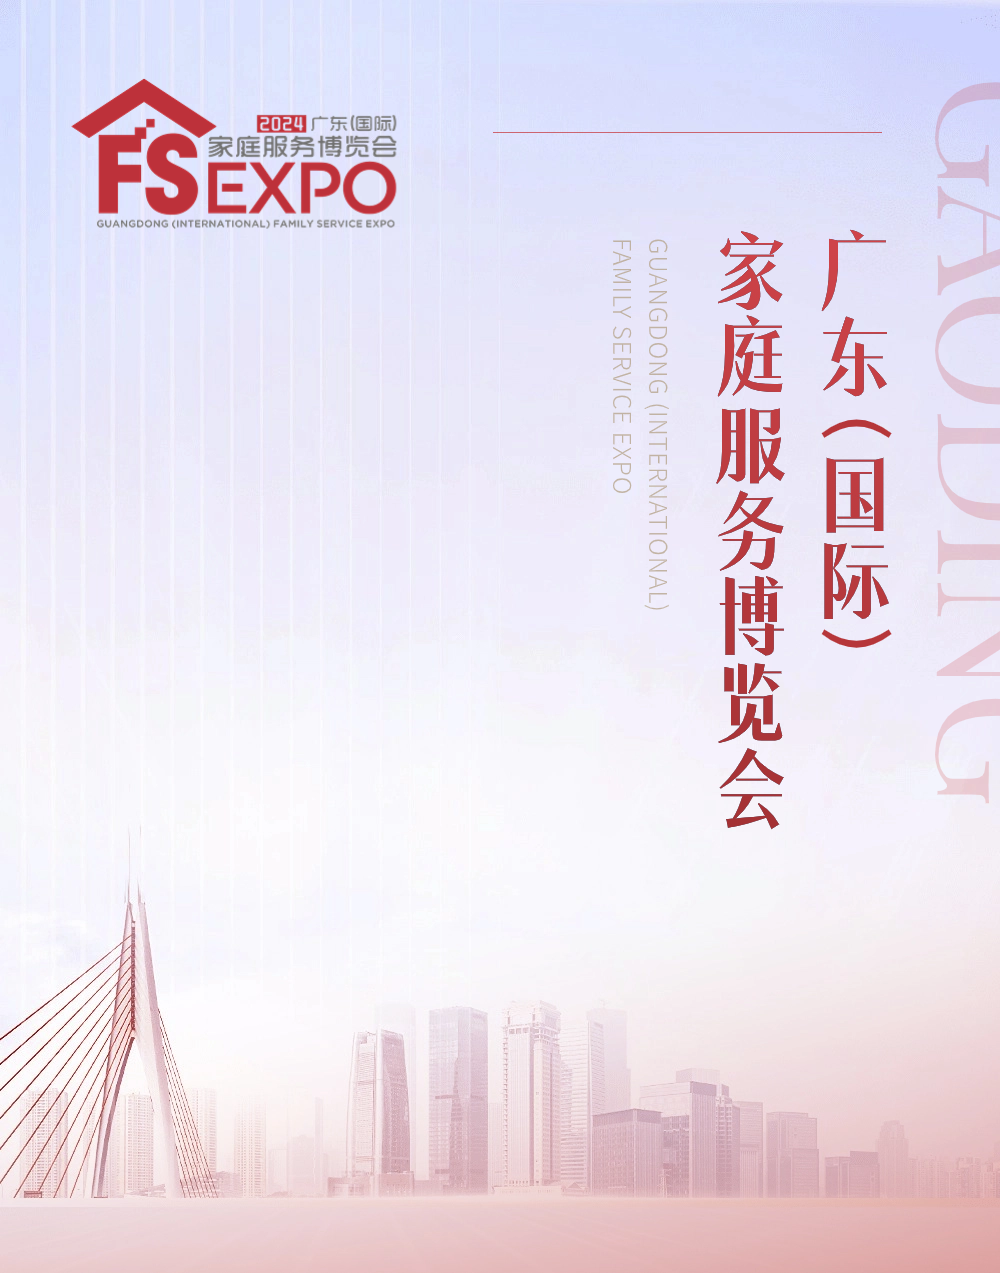 广东（国际）家庭服务博览会将于8月23日在广交会展馆盛大举办，是全国行业欢聚的盛会1.png